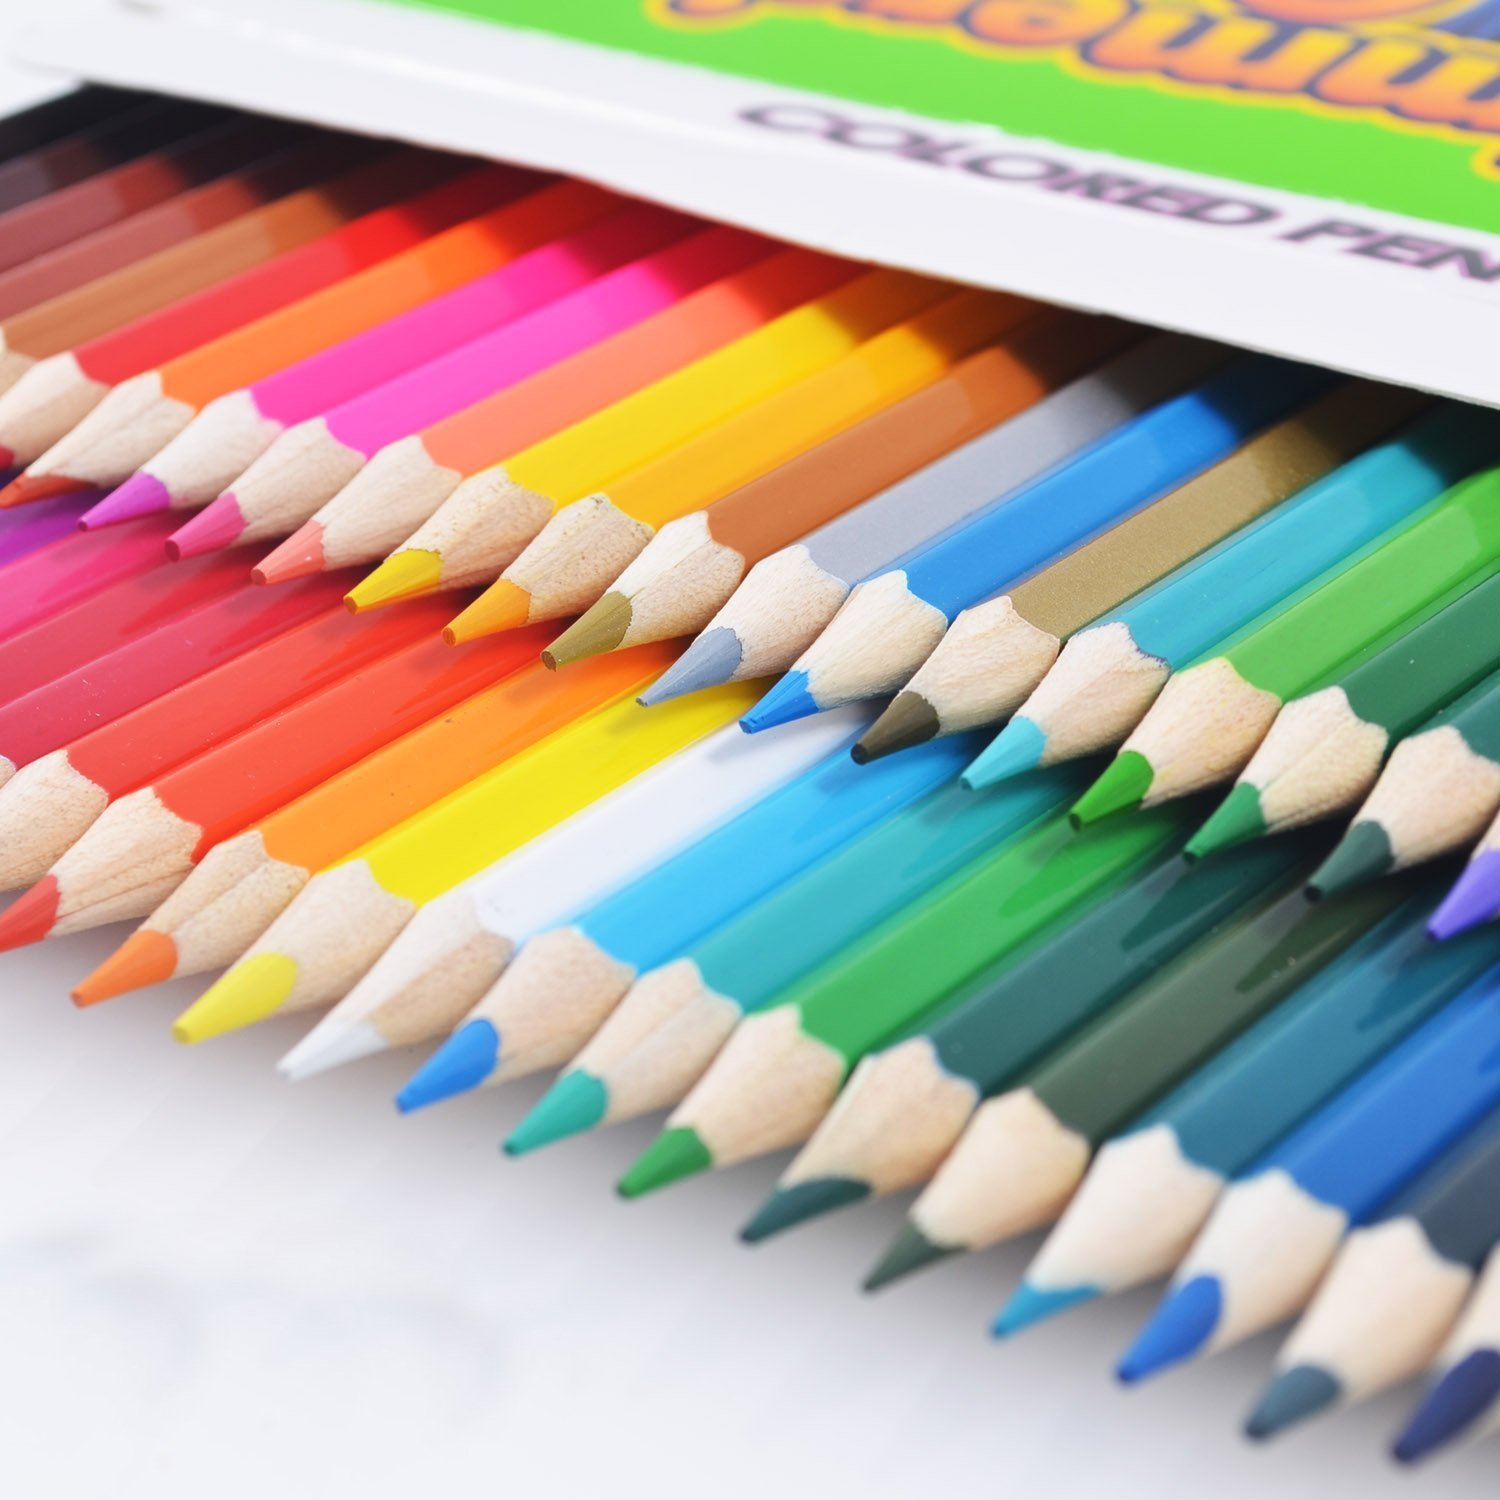 Unique colors. Мягкий цветной карандаш художника. 50 Карандаш цвета. Kuruboya. 50 Colored Pencils.